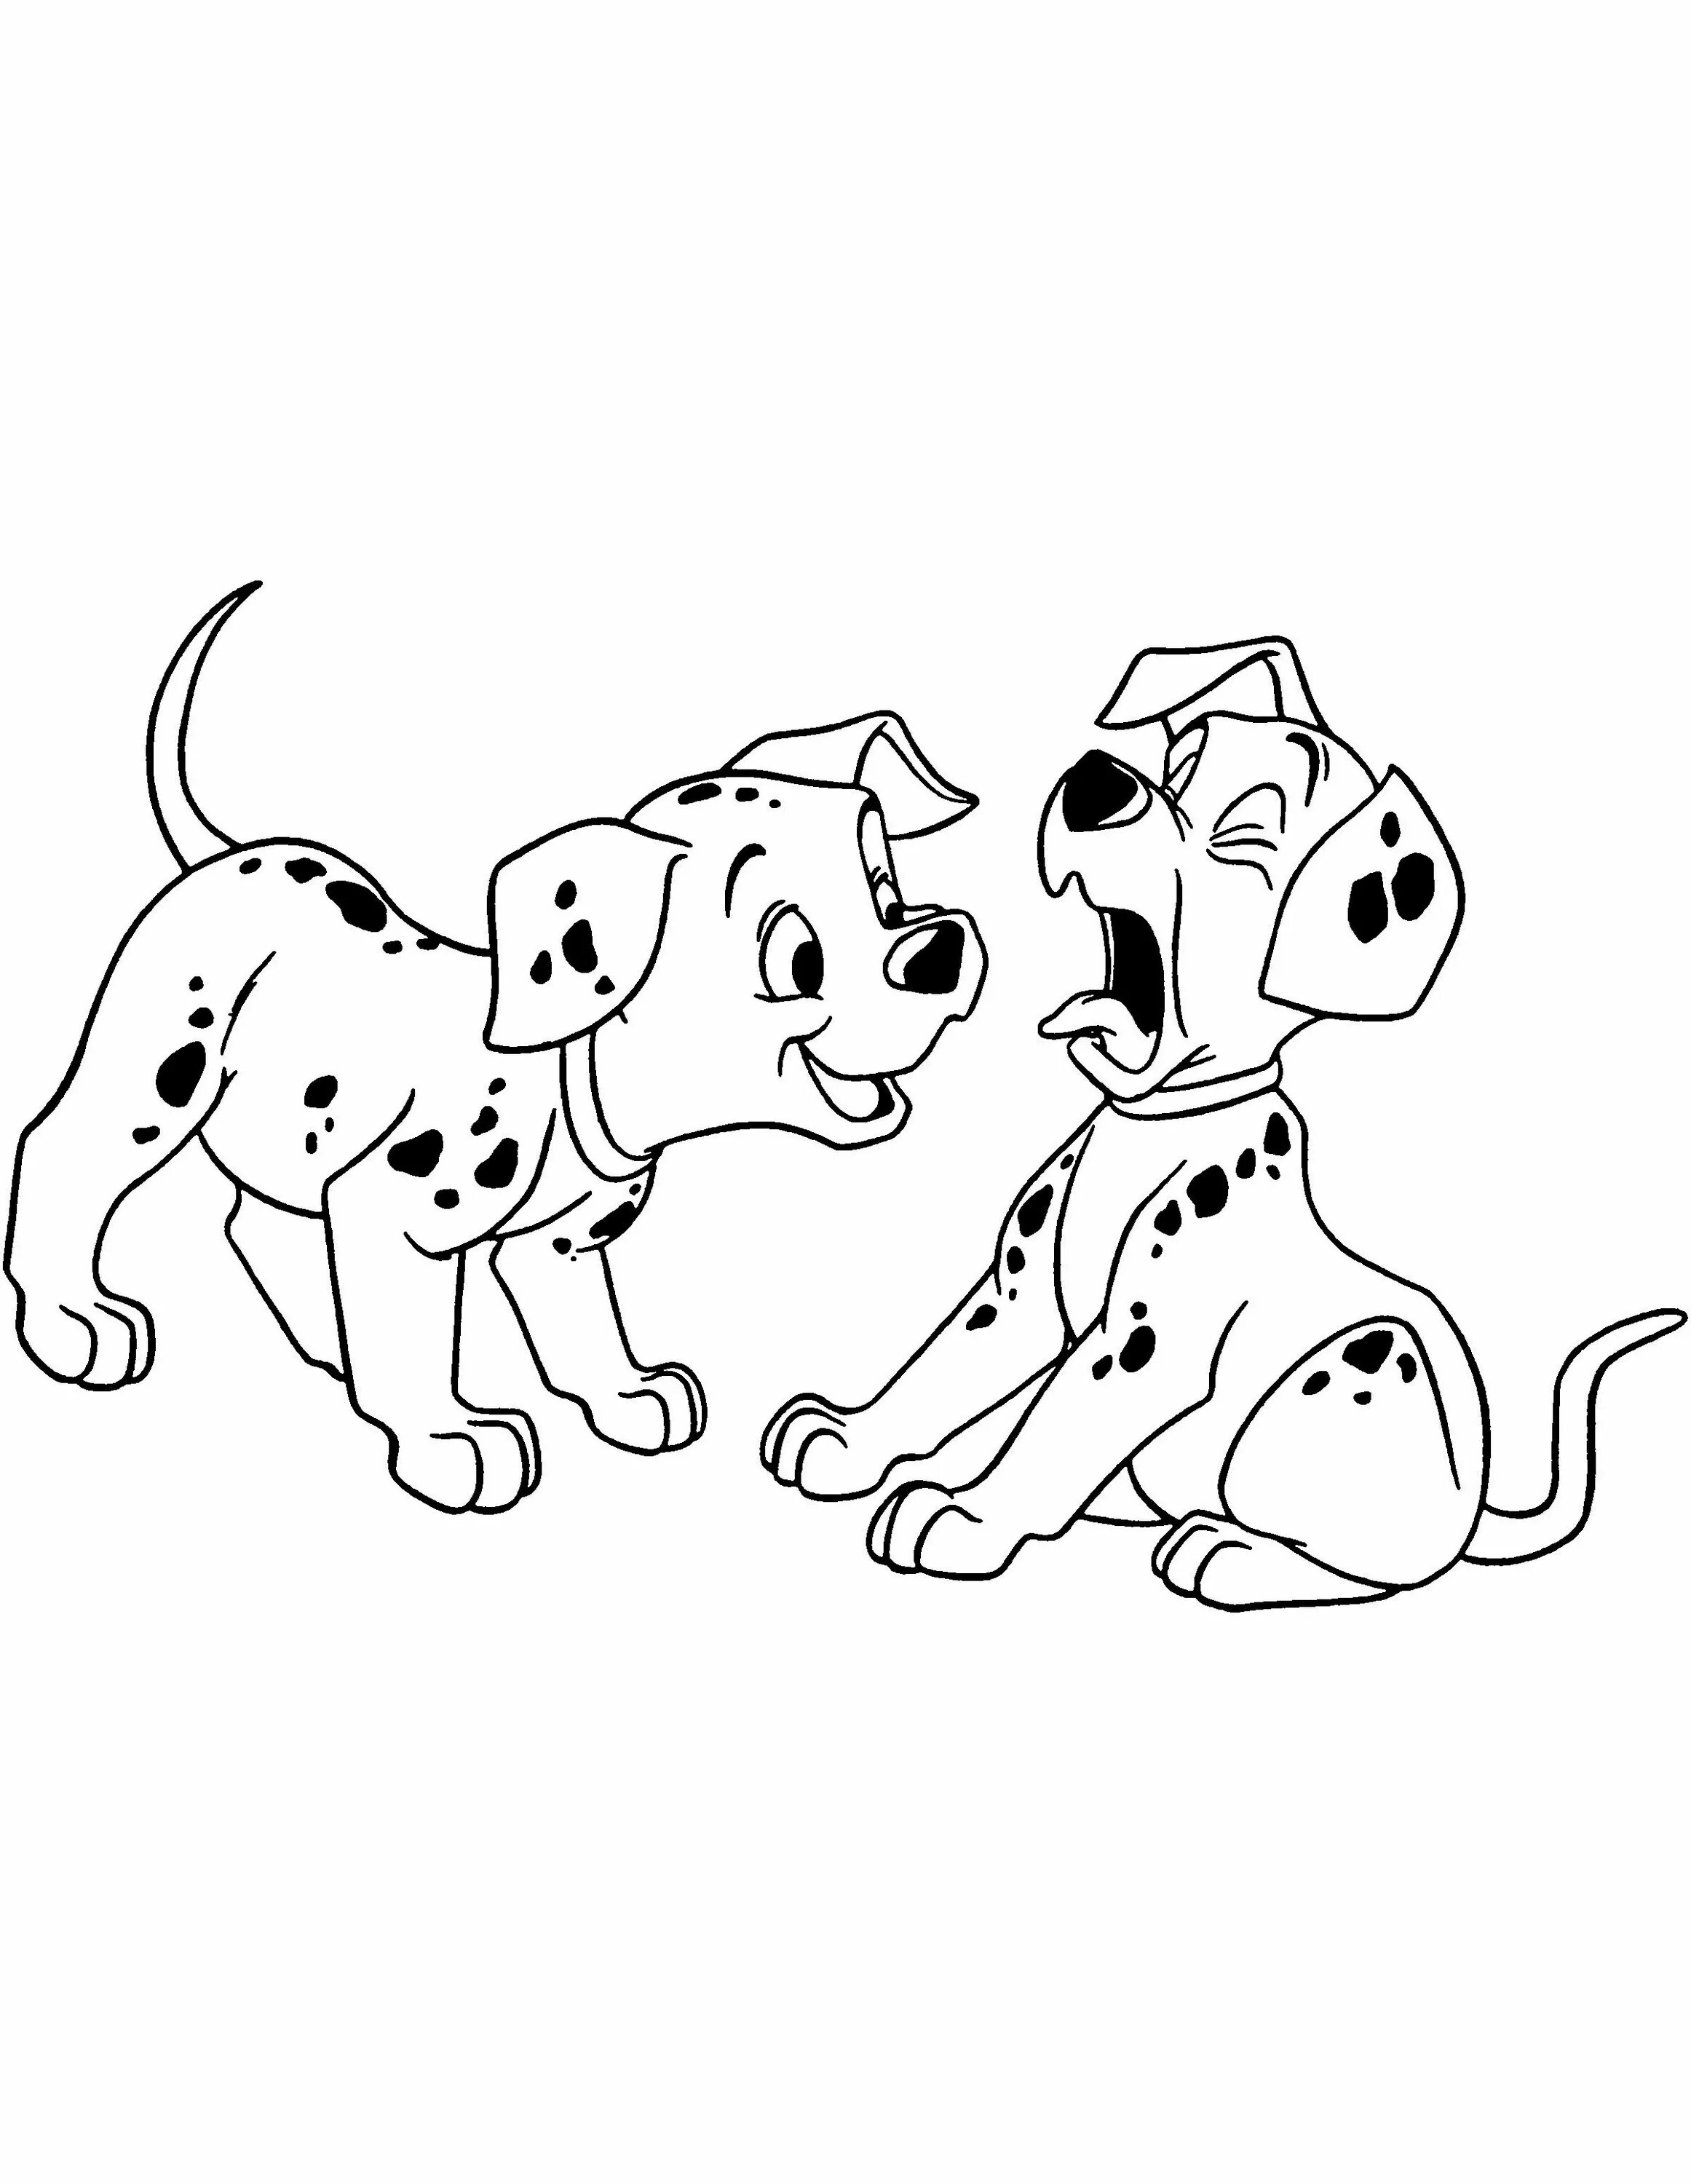 Coloring page joyful dog family